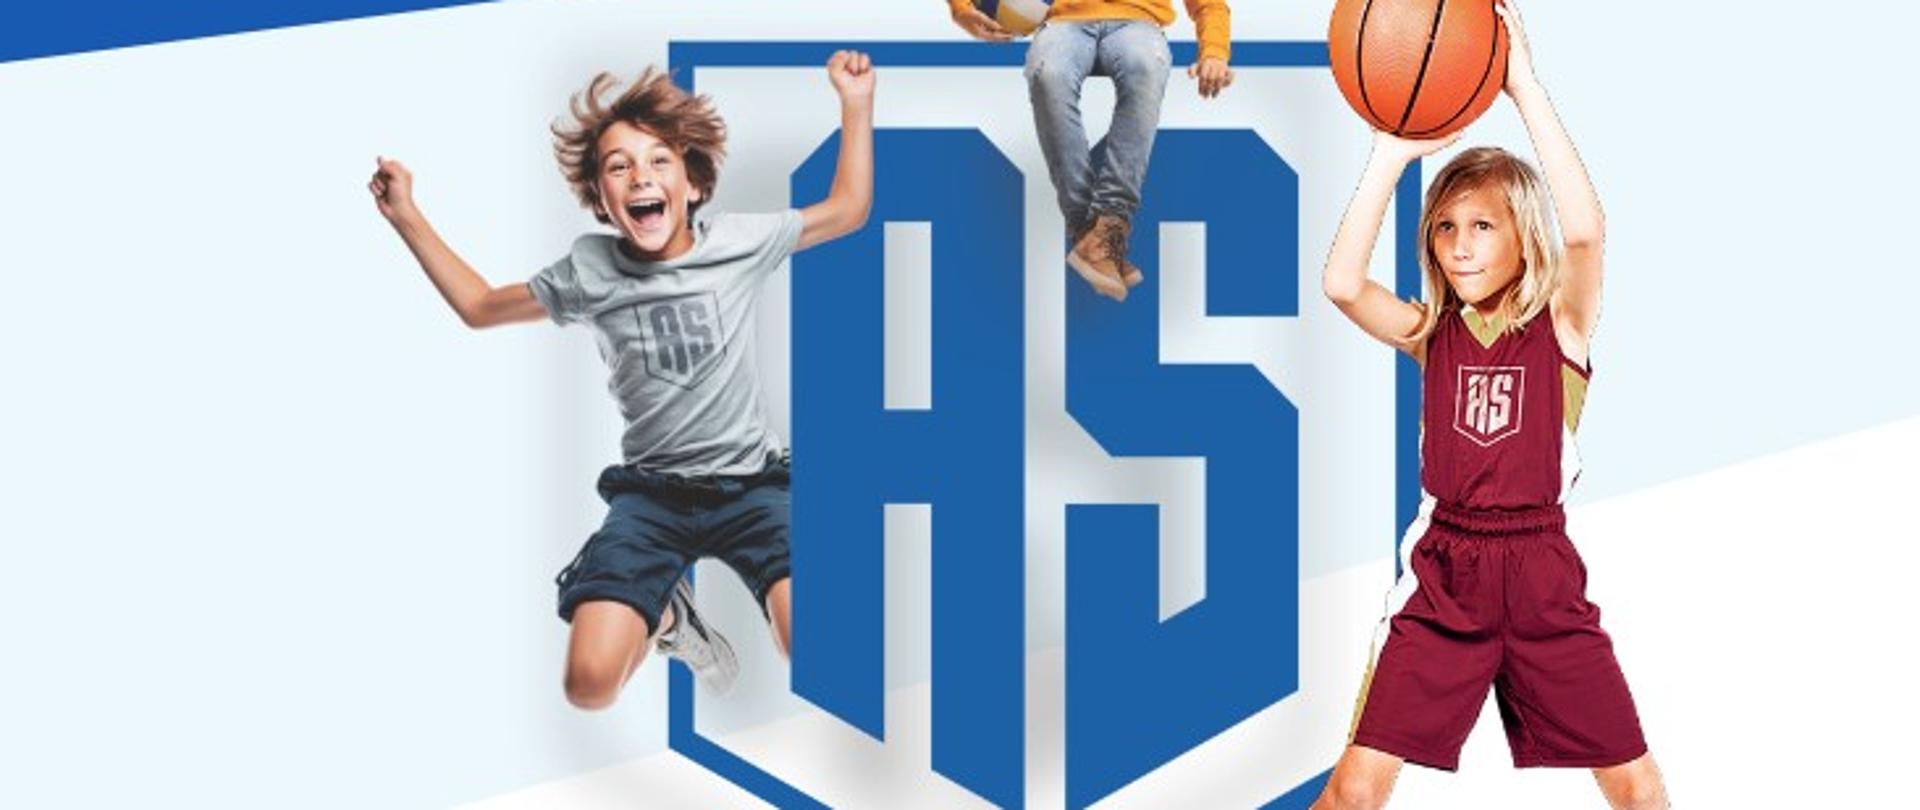 dziewczynka na boisku trzyma piłkę do koszykówki, chłopiec skacze i się uśmiecha, w tle napis aktywna szkoła 